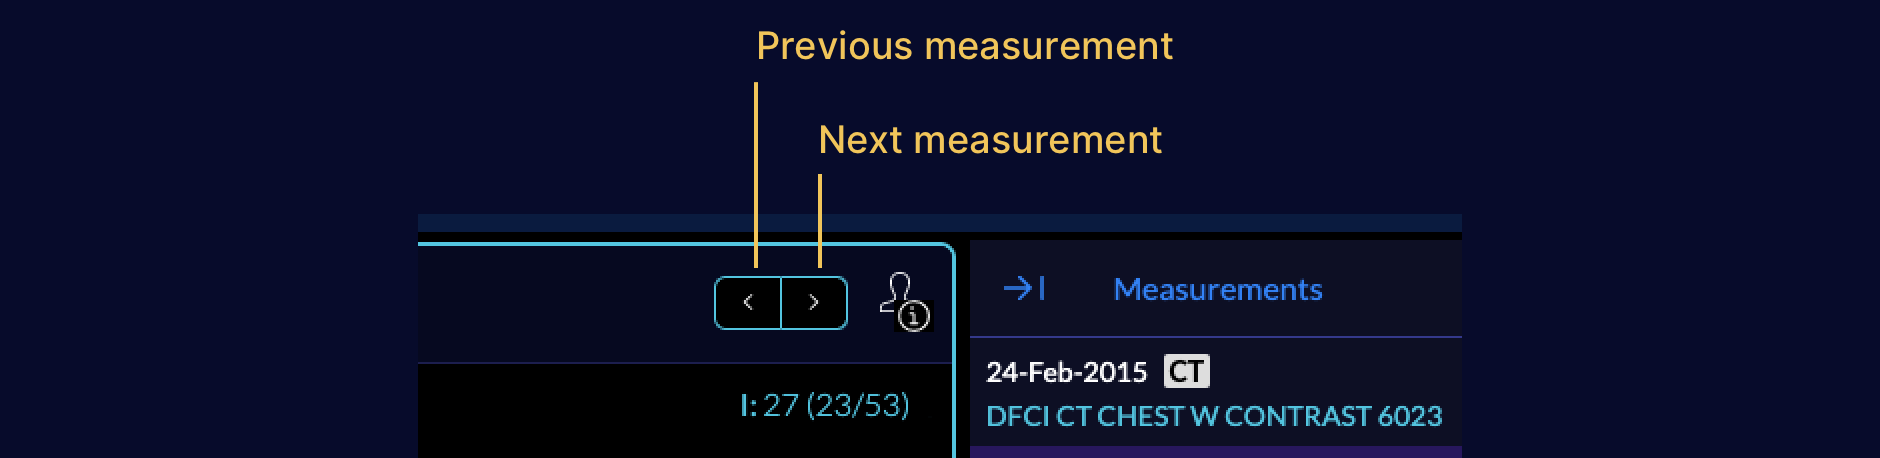 measurements-prevNext